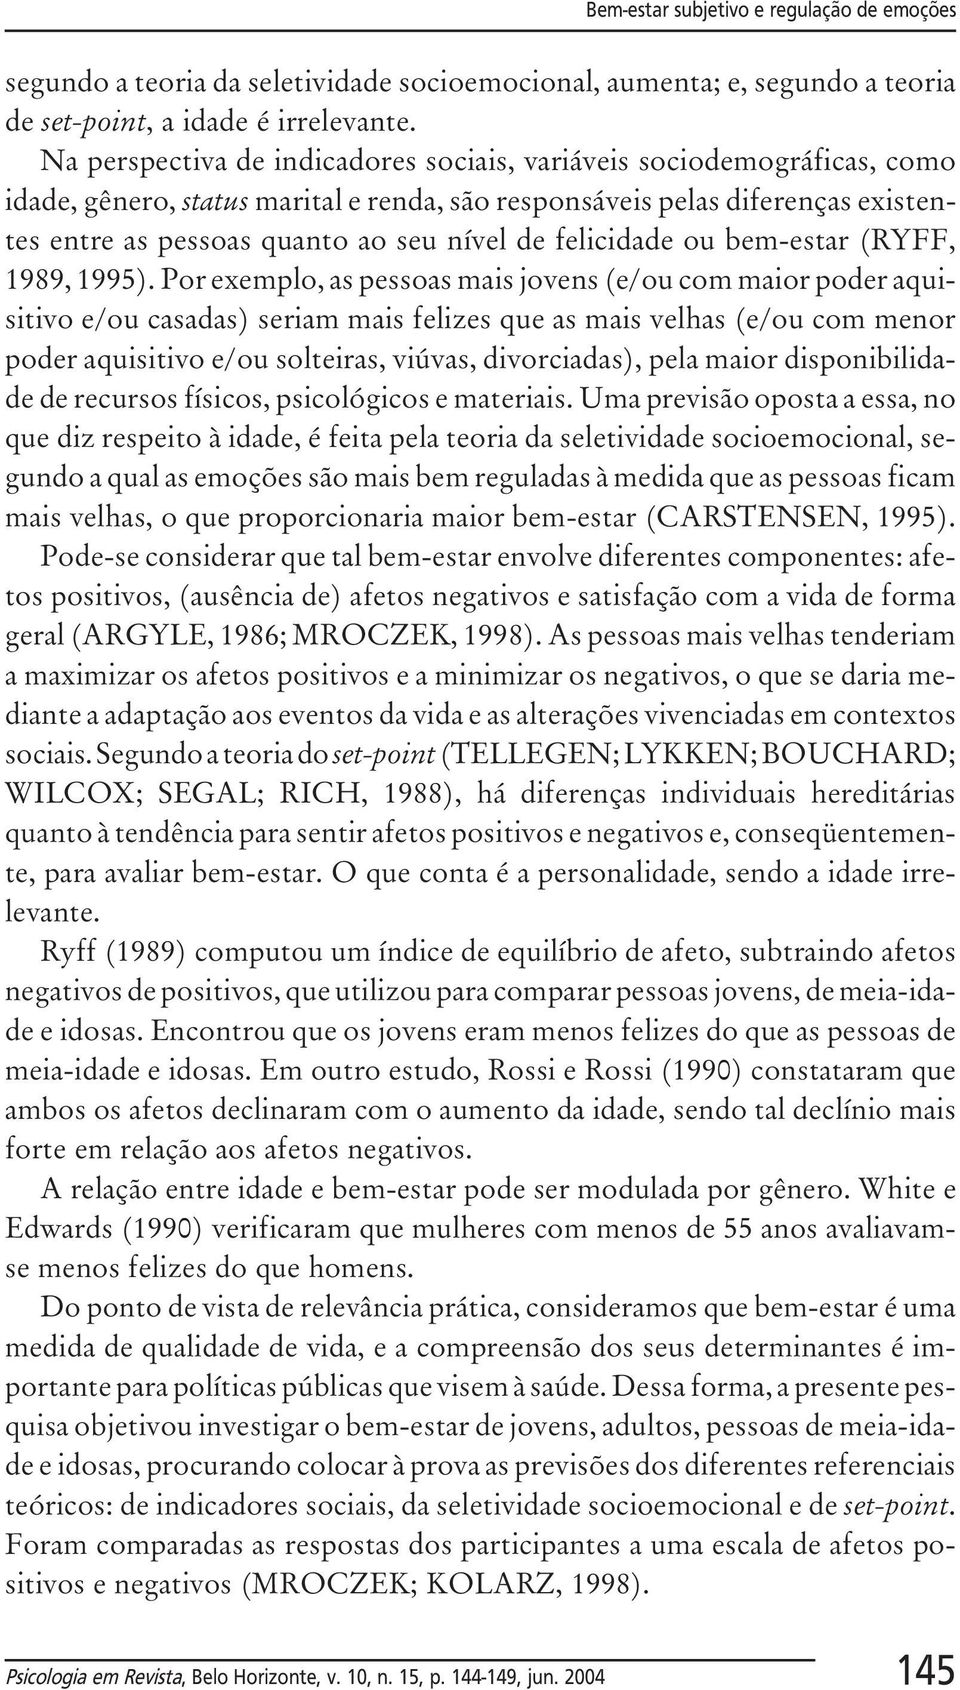 felicidade ou bem-estar (RYFF, 1989, 1995).